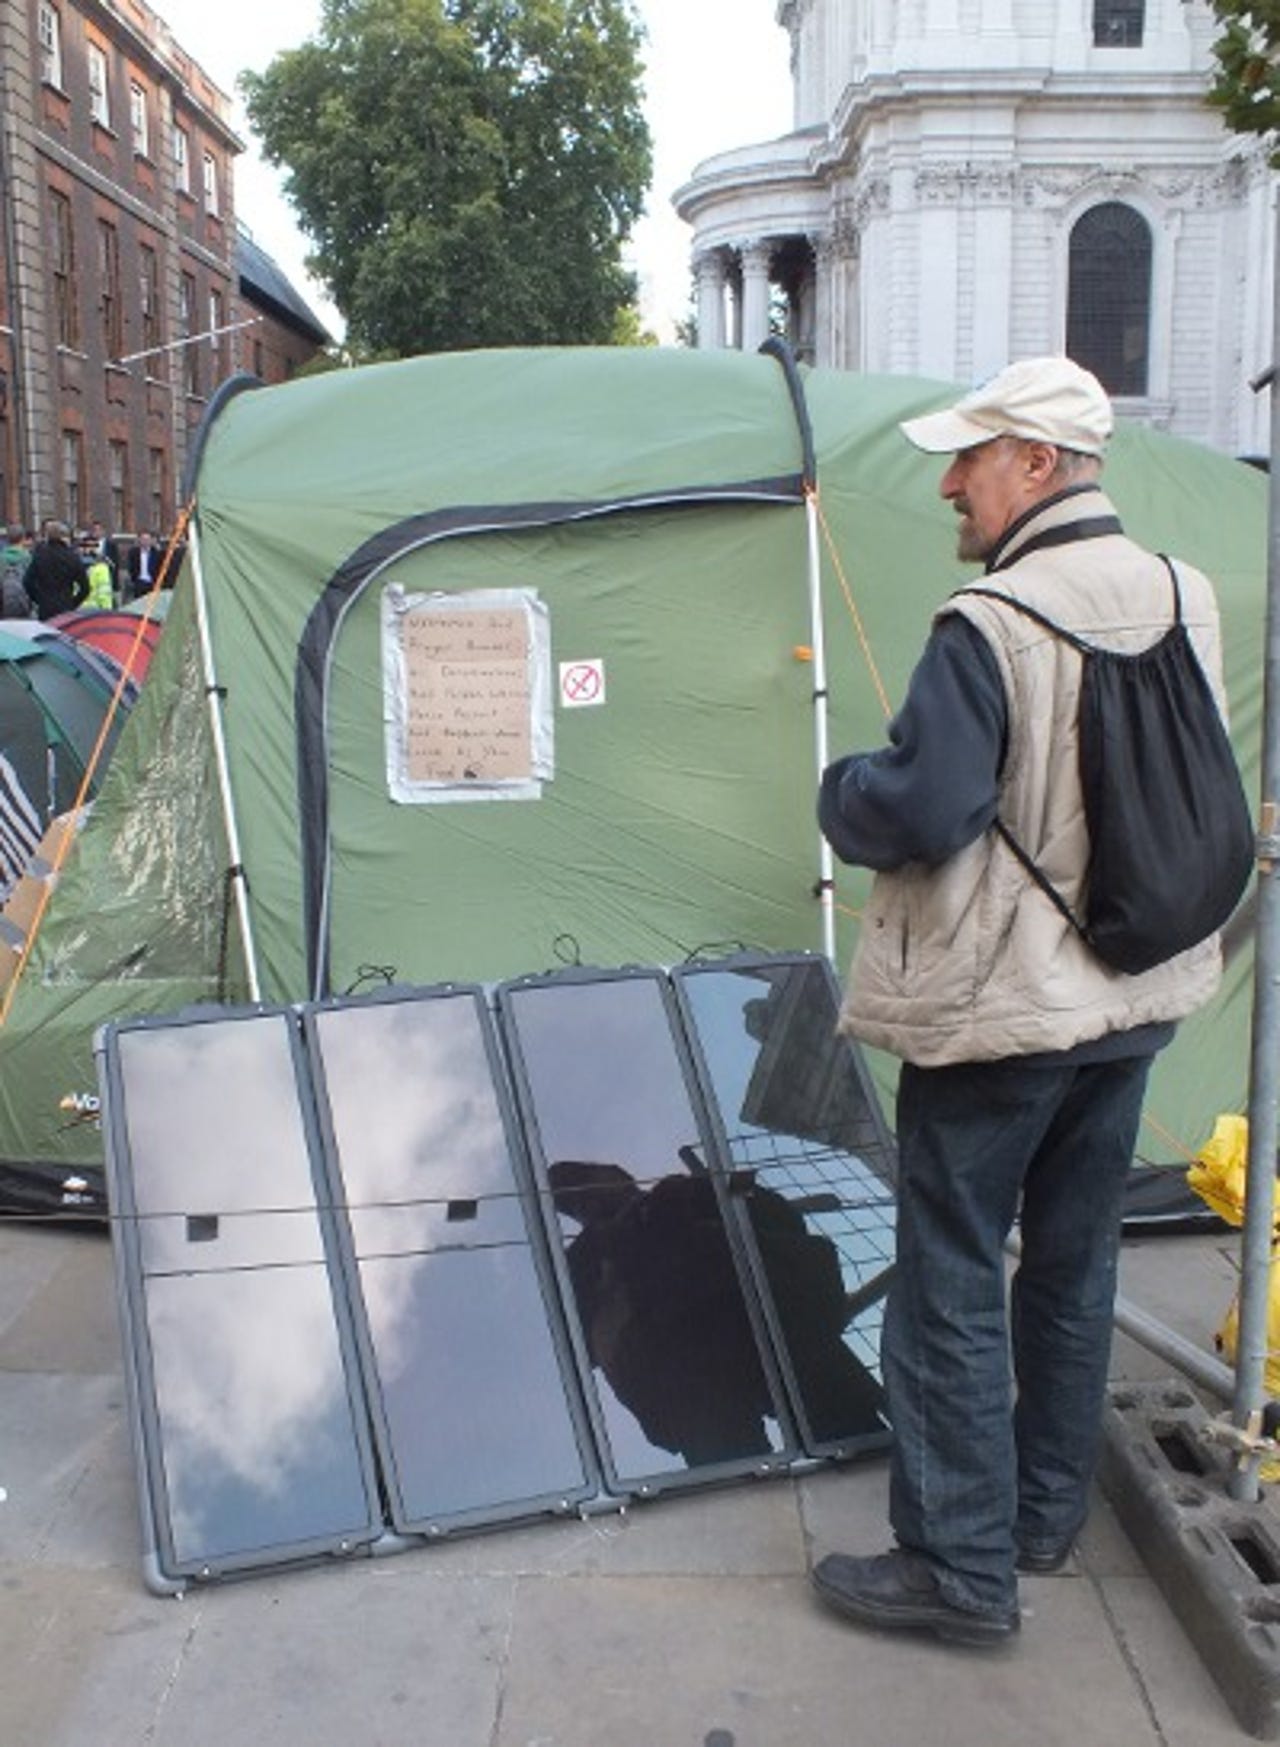 occupy-london-5-tom.jpg